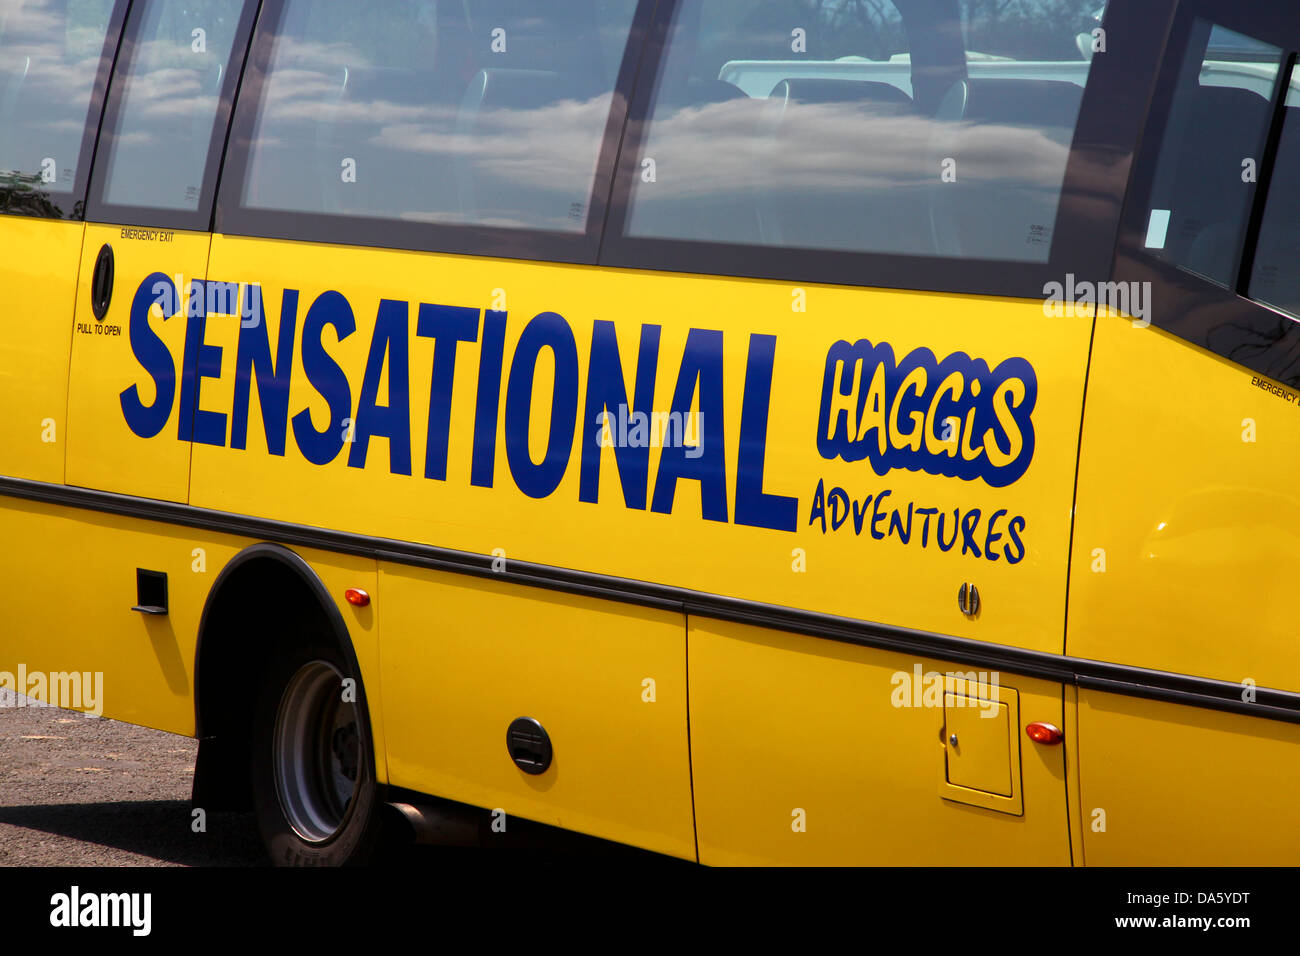 Sensational Haggis adventures yellow tour bus Stock Photo